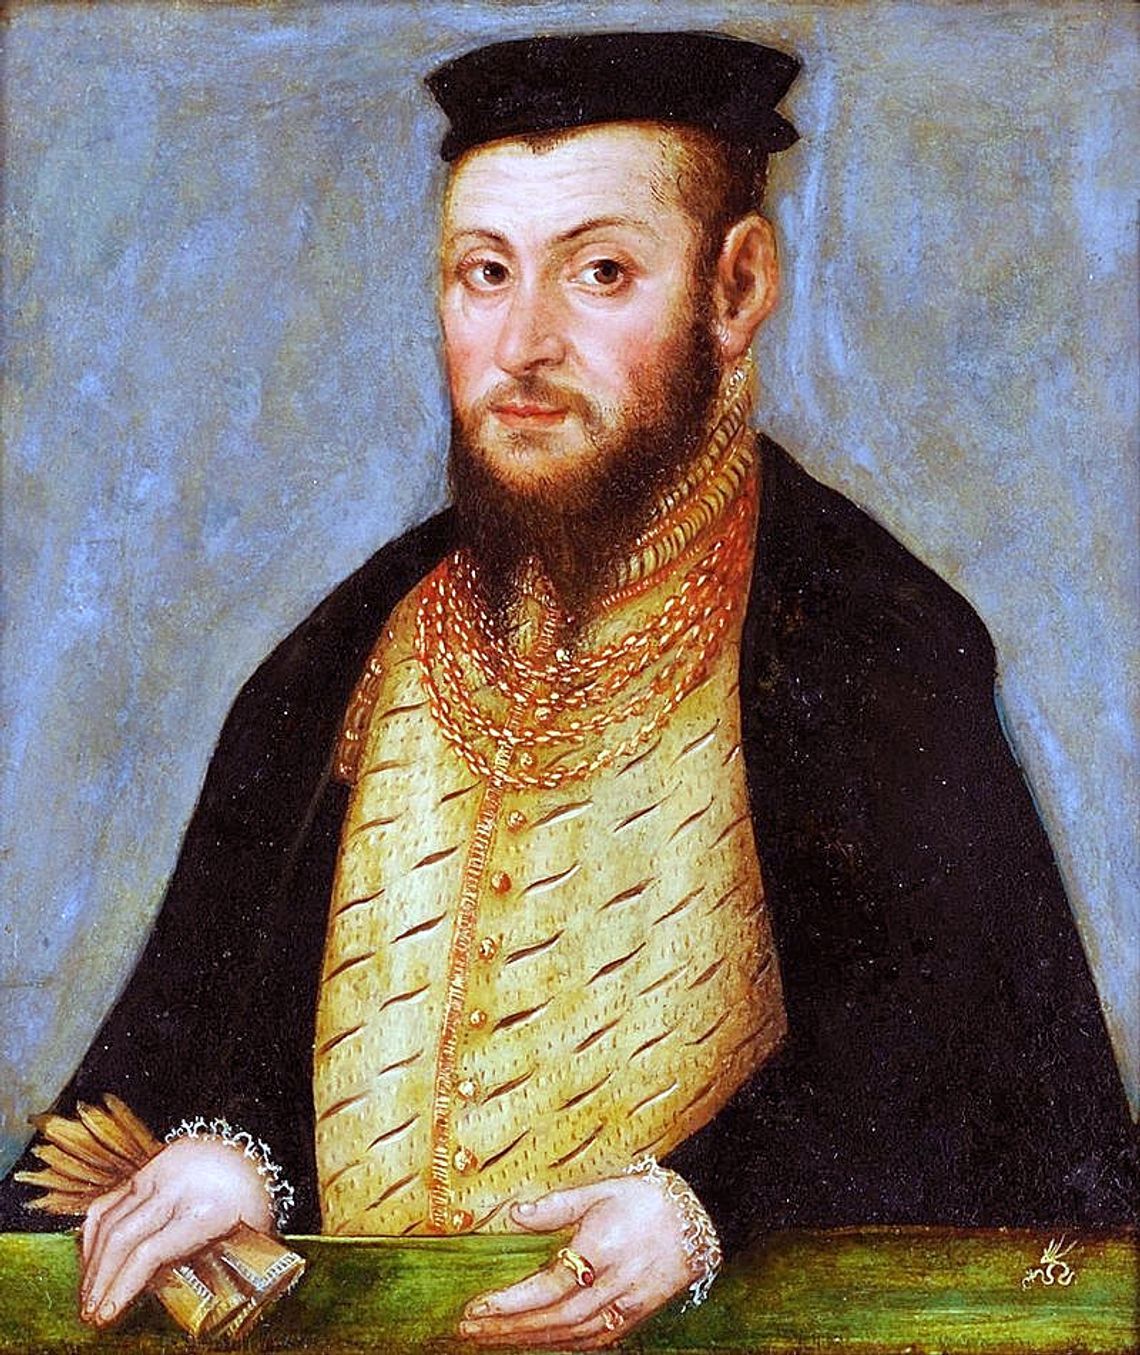 4 lipca 1557 roku w zamian za wsparcie finansowe miasta Elbląg, Gdańsk i Toruń otrzymały od króla Zygmunta Augusta przywilej rozdawania komunii pod dwiema postaciami. Faktycznie była to zgoda na reformację